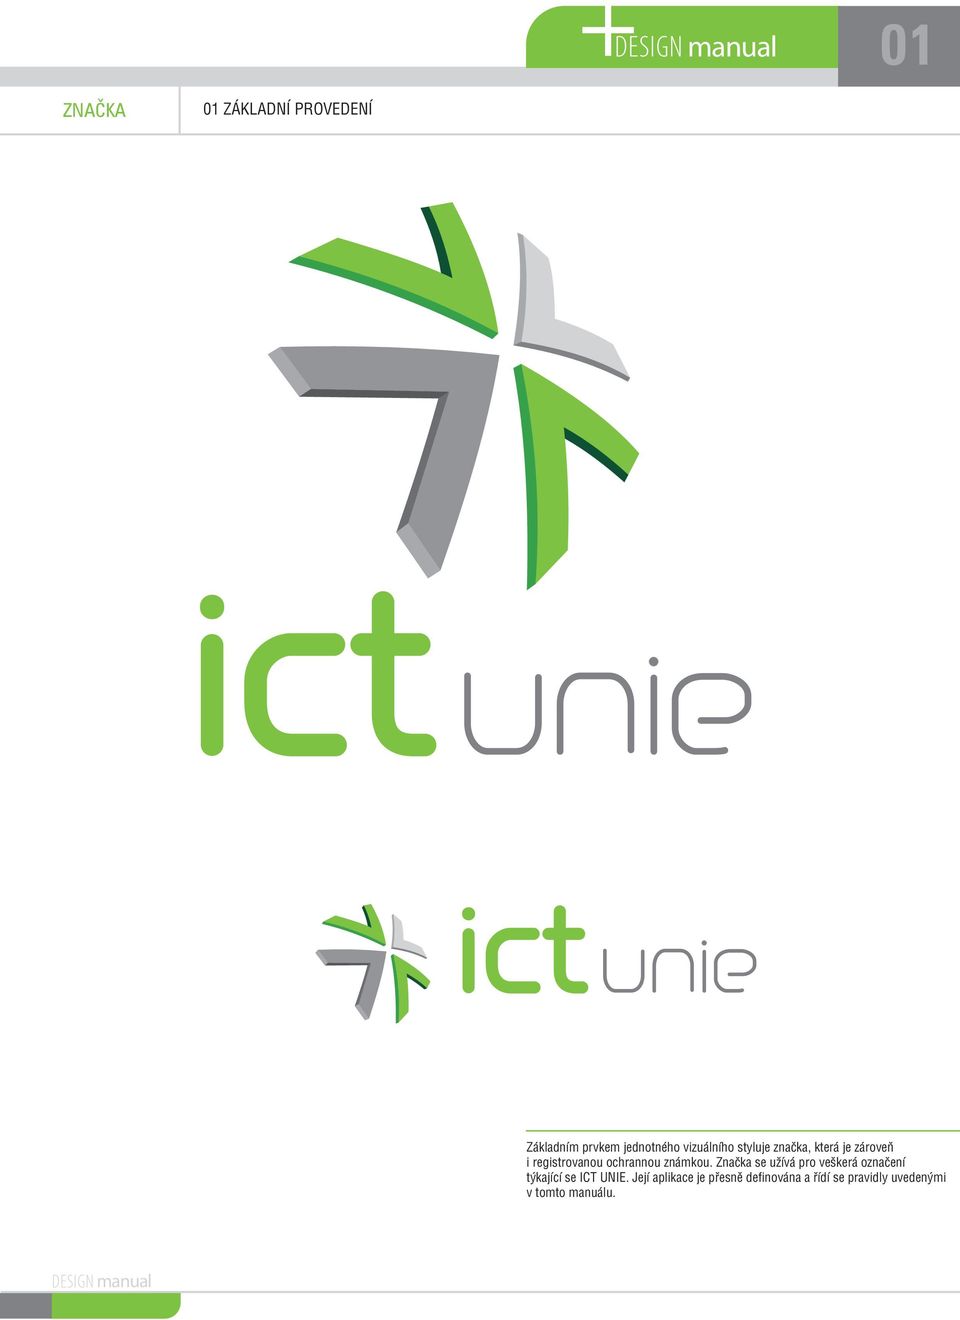 známkou. Znaèka se užívá pro veškerá oznaèení týkající se ICT UNIE.